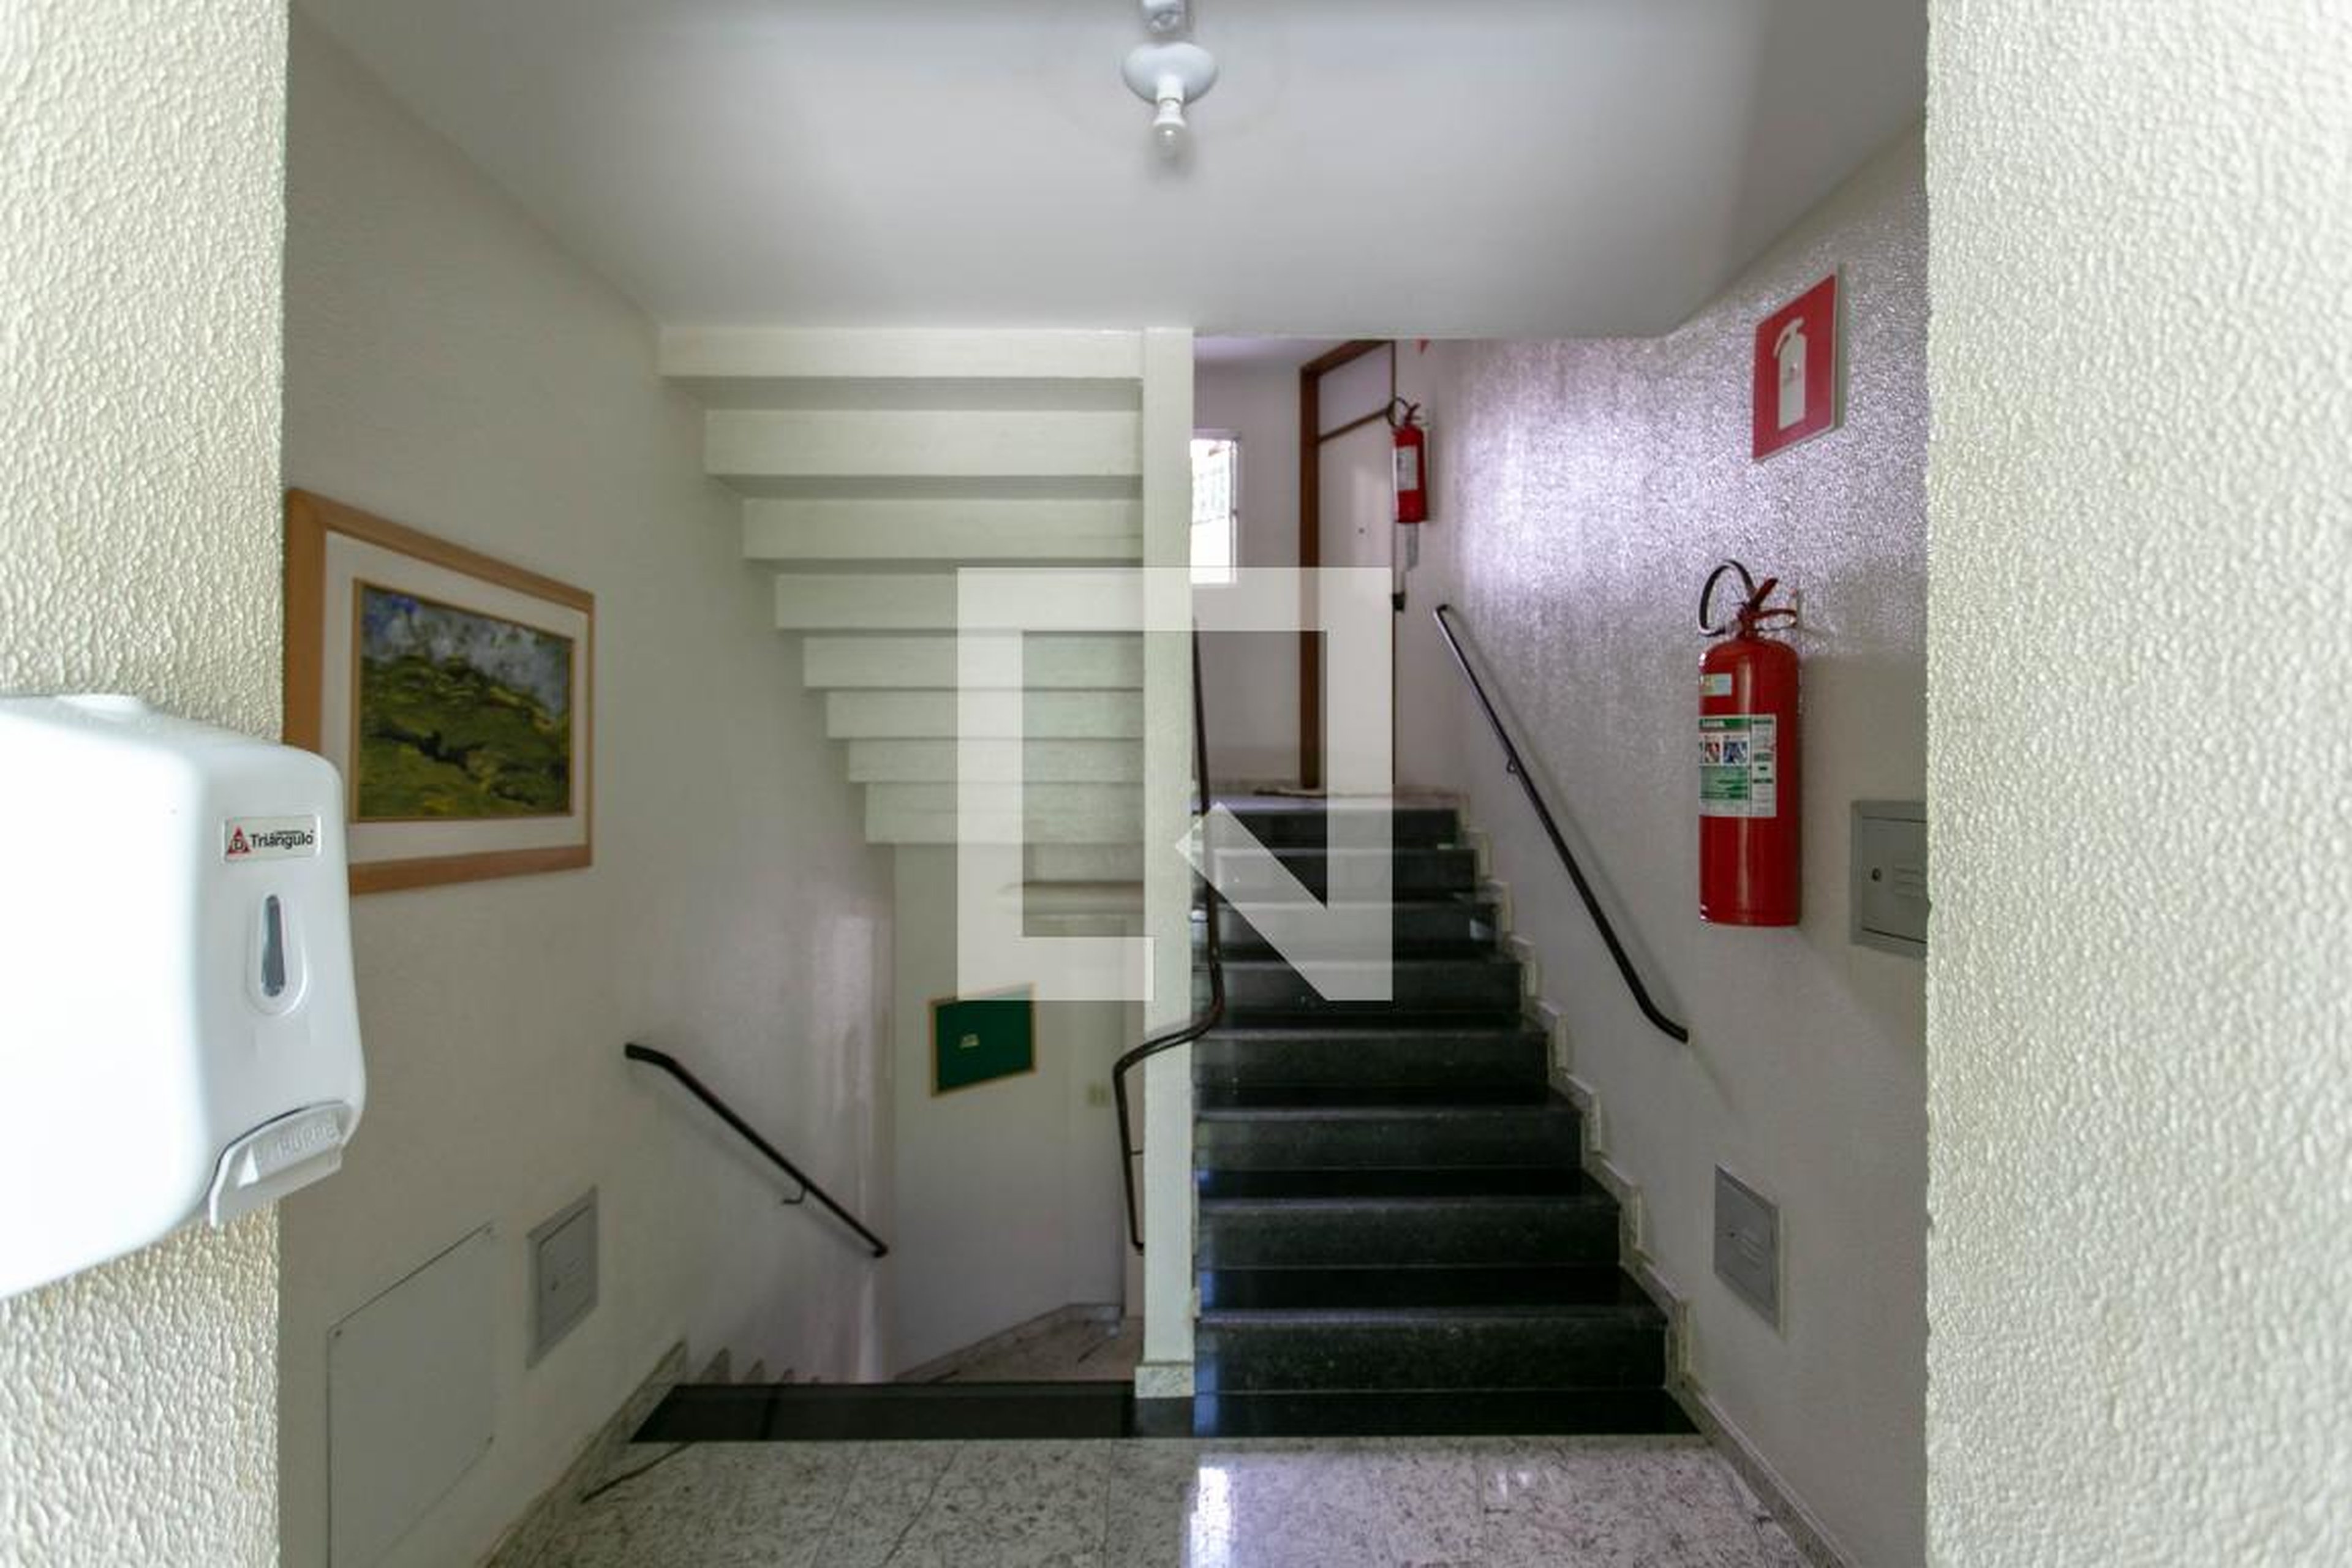 Hall de entrada - Edifício Monte Carlo